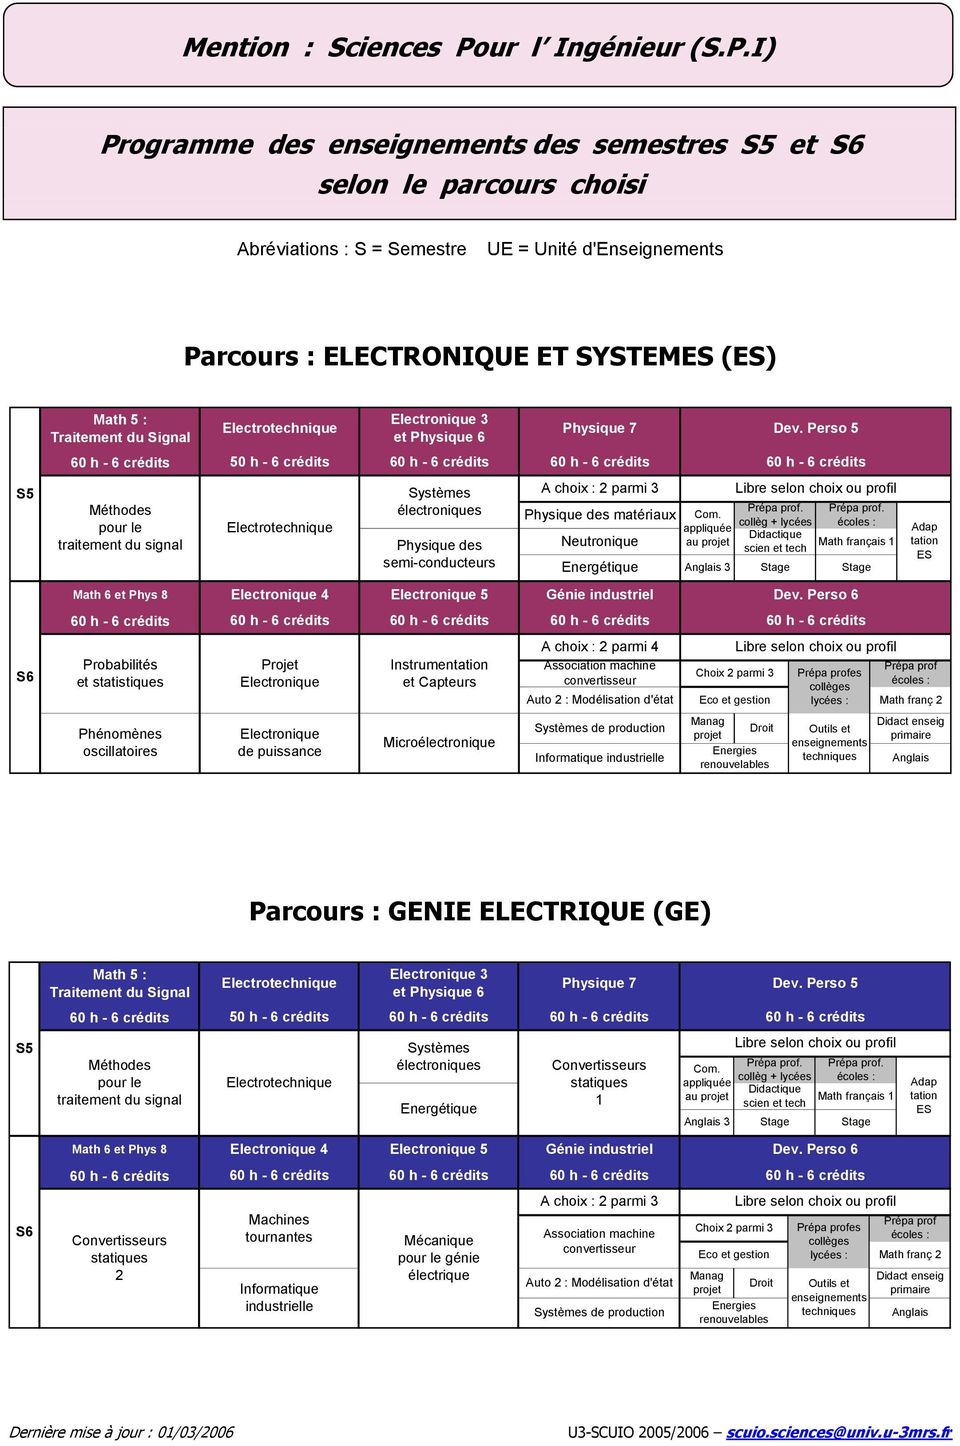 I) Programme des enseignements des semestres et selon le parcours choisi Abréviations : S = Semestre UE = Unité d'enseignements : ELECTRONIQUE ET SYSTEMES (ES) Math 5 : Traitement du Signal